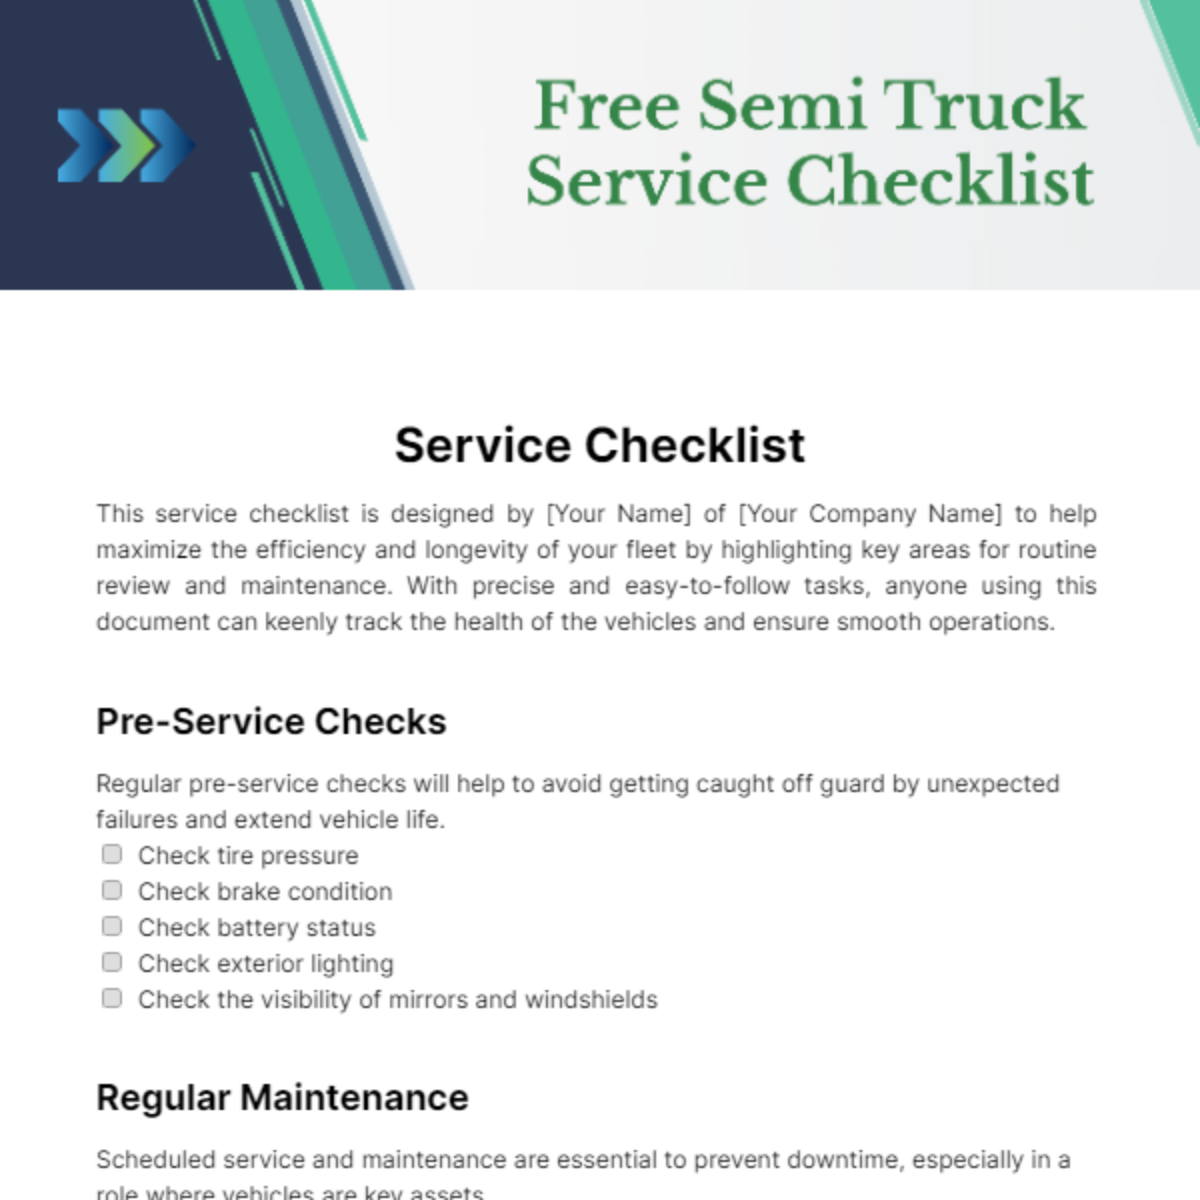 Free Semi Truck Service Checklist Template